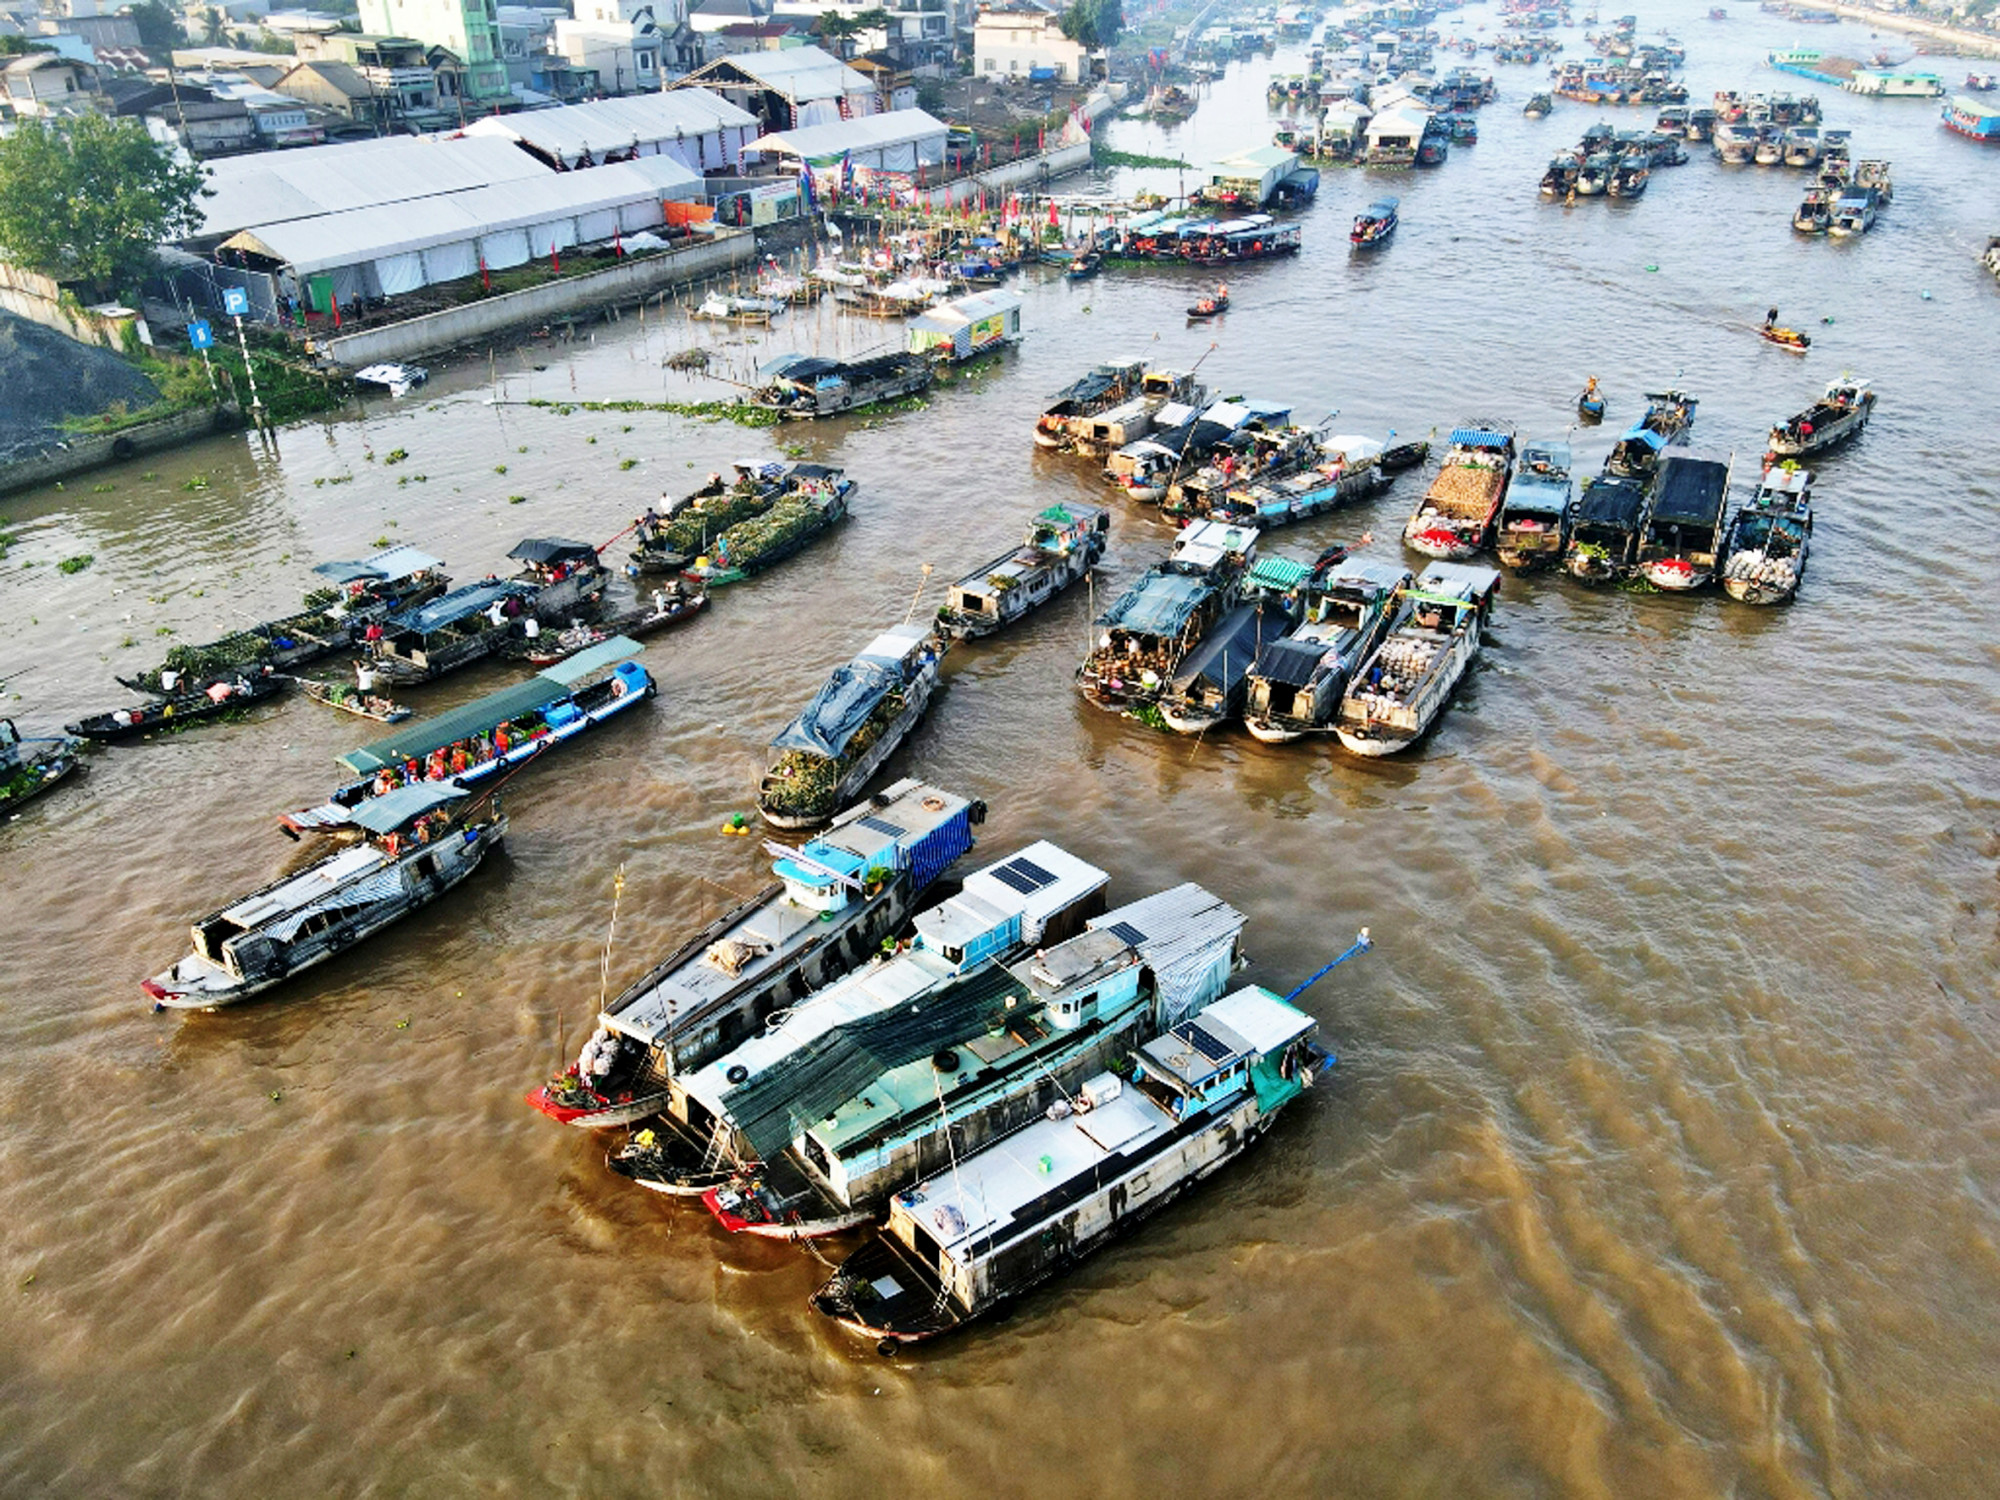 Chợ nổi Cái Răng lâu đời và nổi tiếng nhất ở đồng bằng sông Cửu Long đang có nguy cơ không còn tồn tại